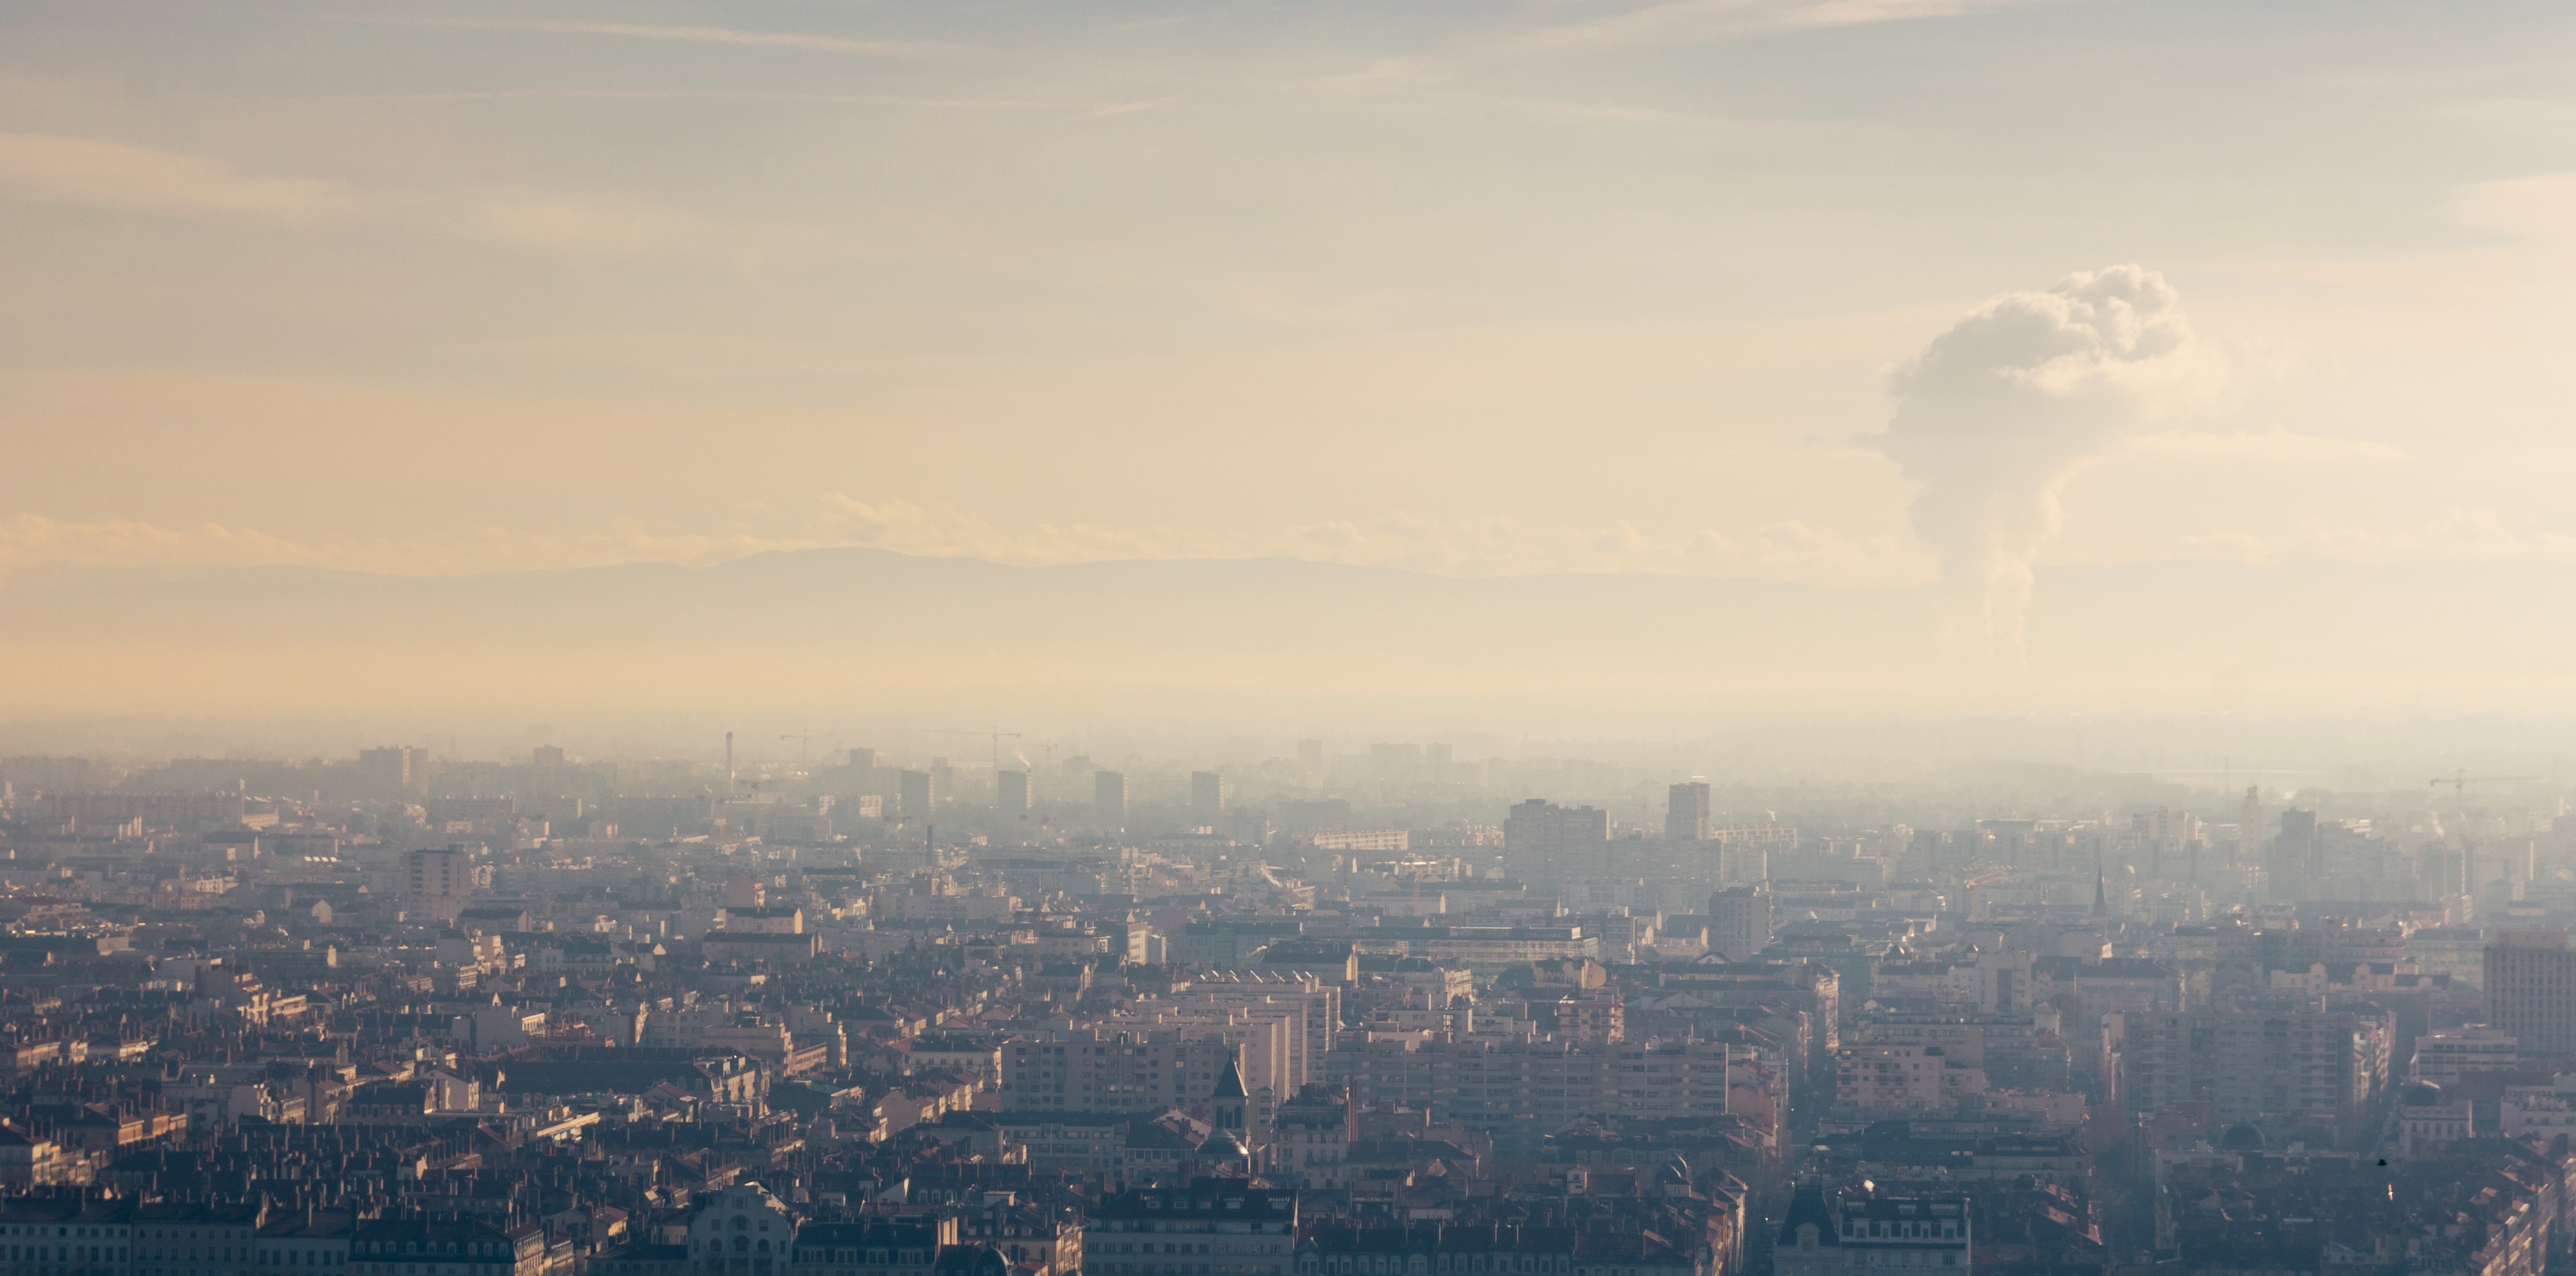 Le quatrième rapport du Haut Conseil pour le Climat (HCC) appelle à « dépasser les constats pour mettre en œuvre les solutions ». Nuage de pollution au dessus de Lyon un jour de canicule. © jef 77, Adobe Stock